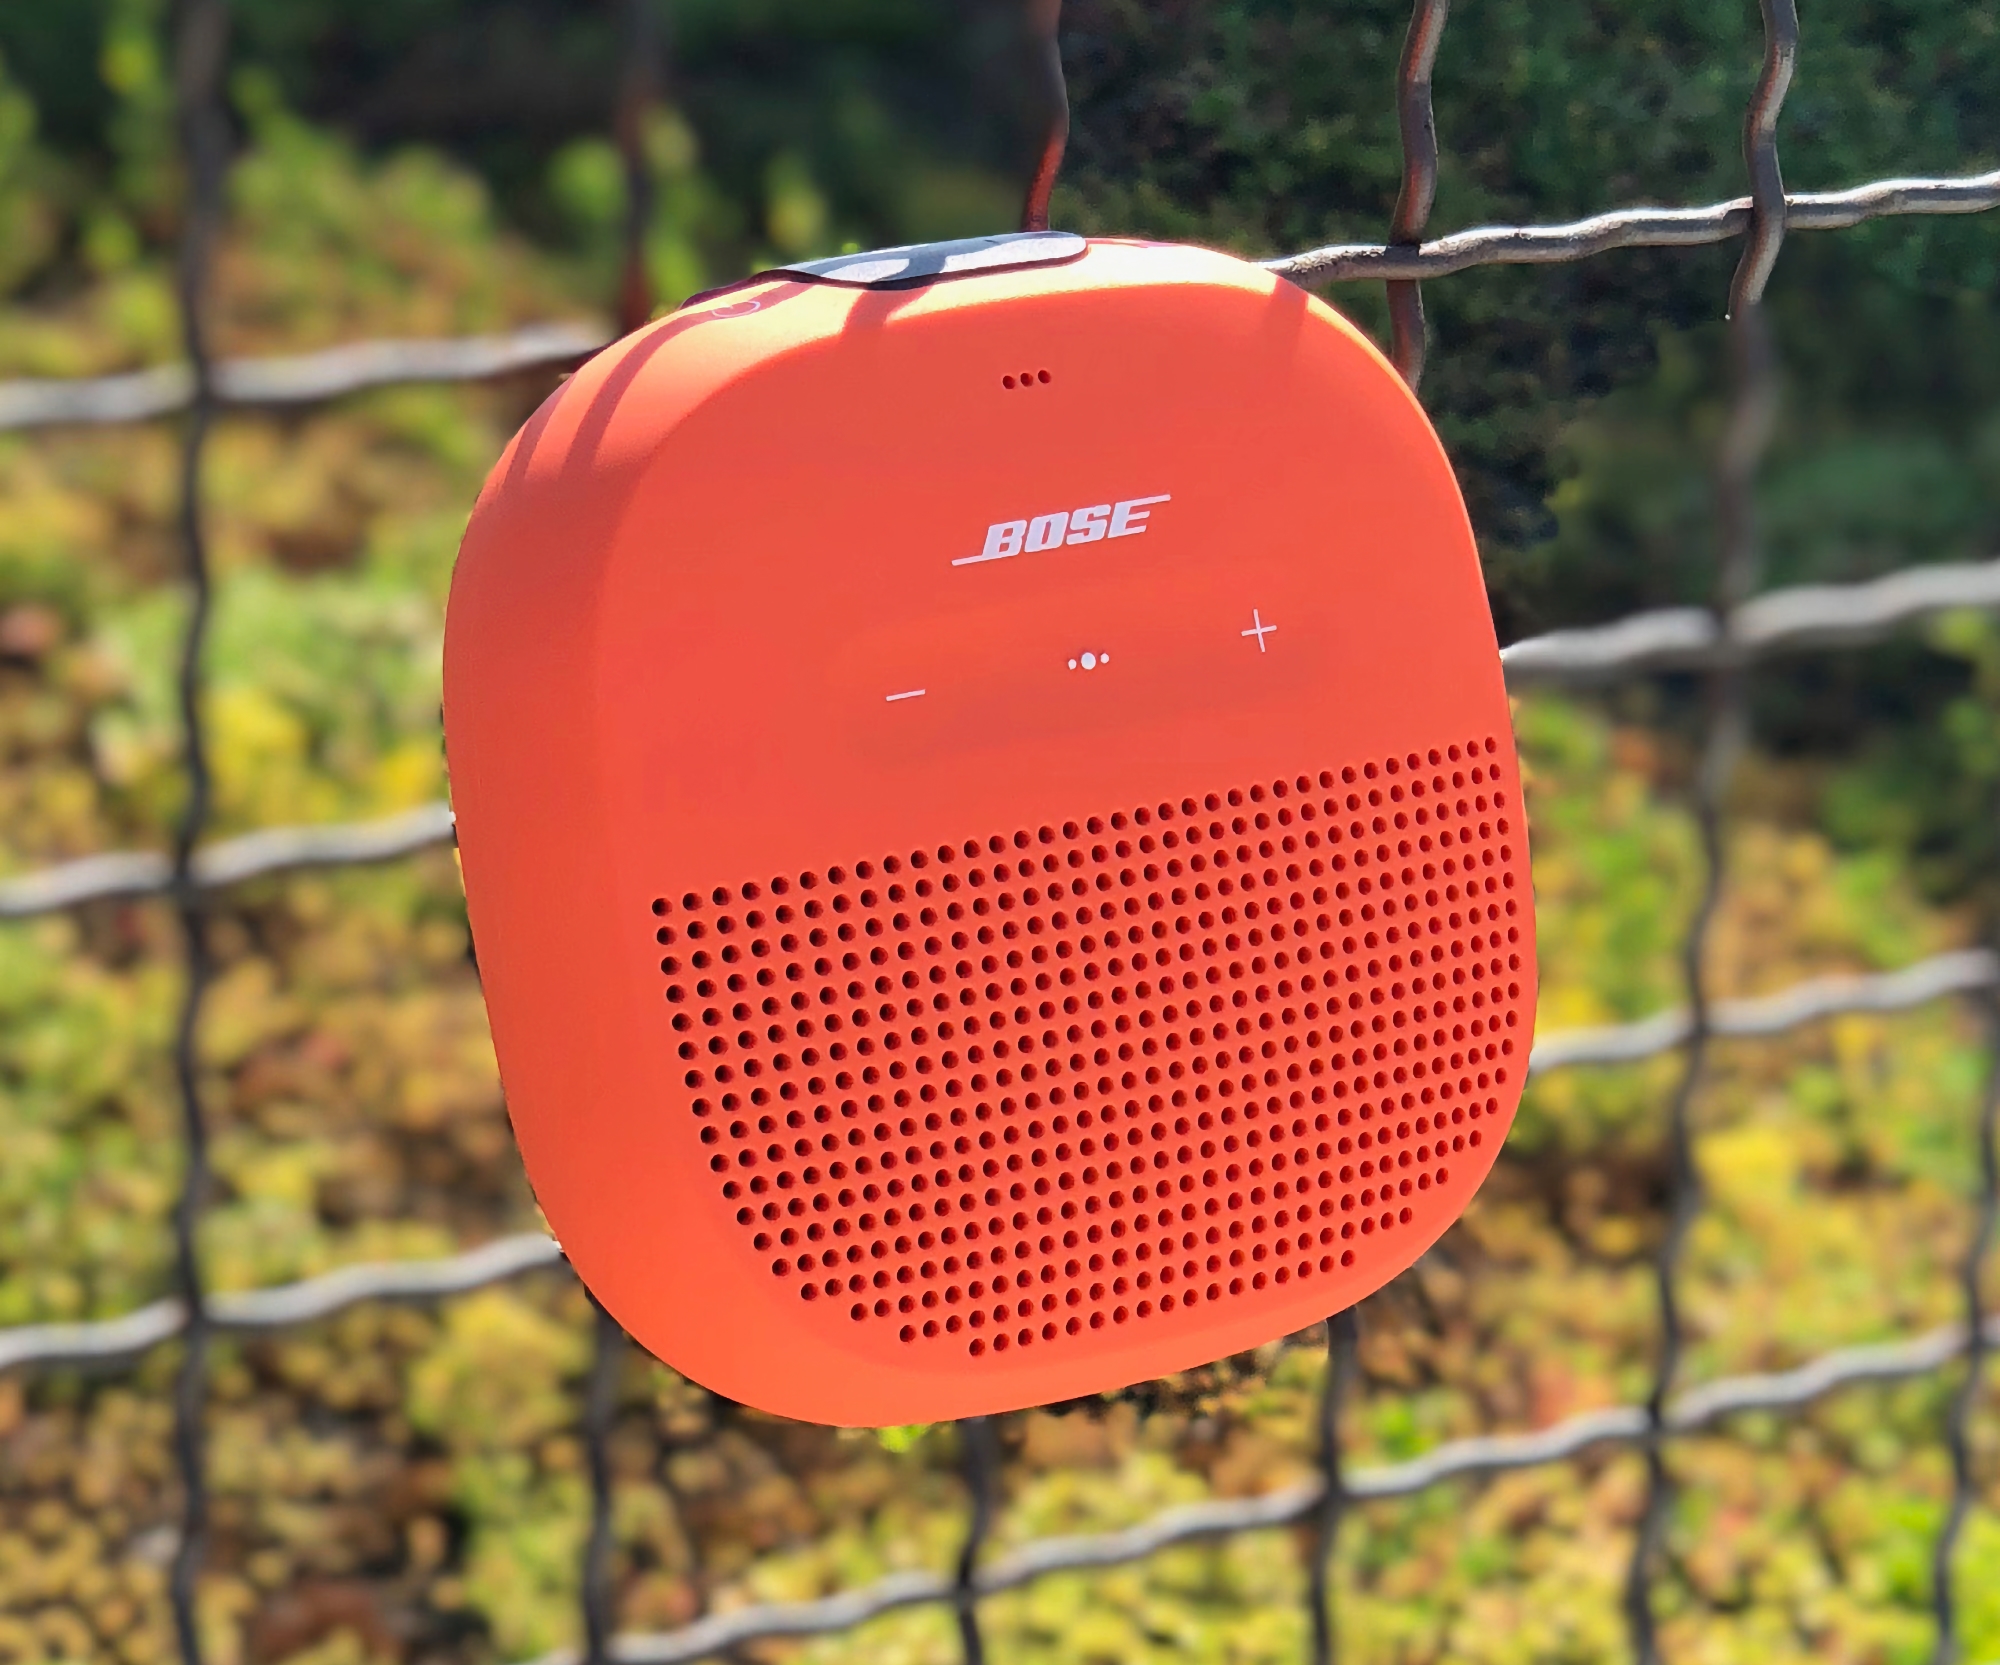 Bose SoundLink Micro på Amazon: kompakt trådlös högtalare med IP67-skydd för $ 99 ($ 19 rabatt)